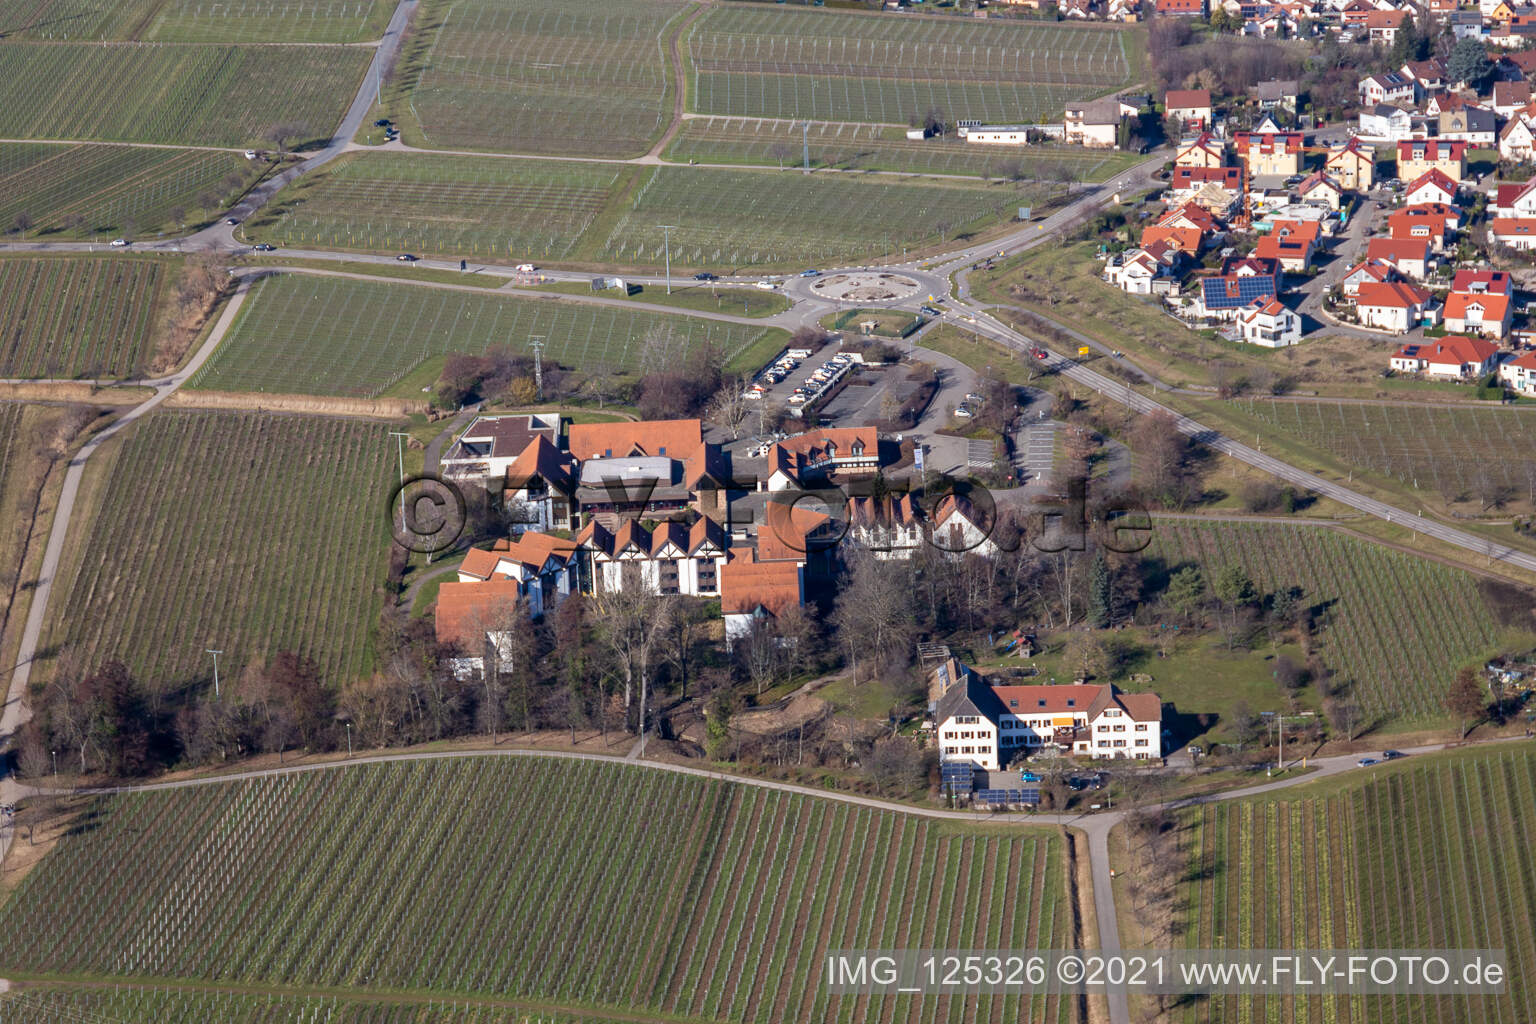 Vue aérienne de BG RCI à Maikammer dans le département Rhénanie-Palatinat, Allemagne